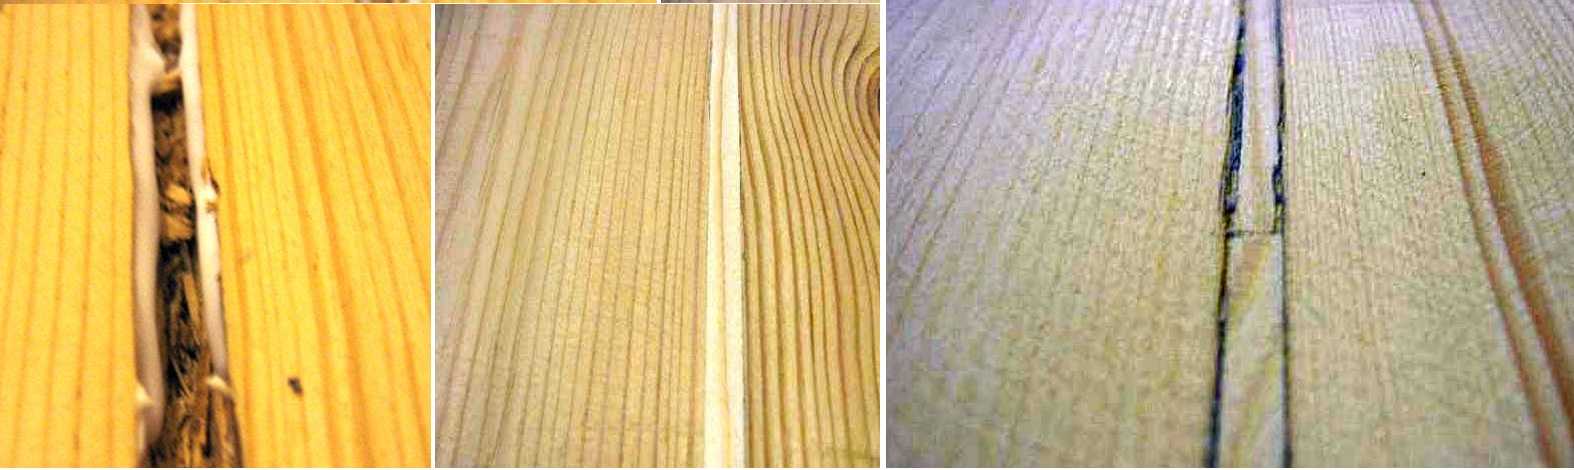 Чем заделать щели в деревянном полу перед покраской